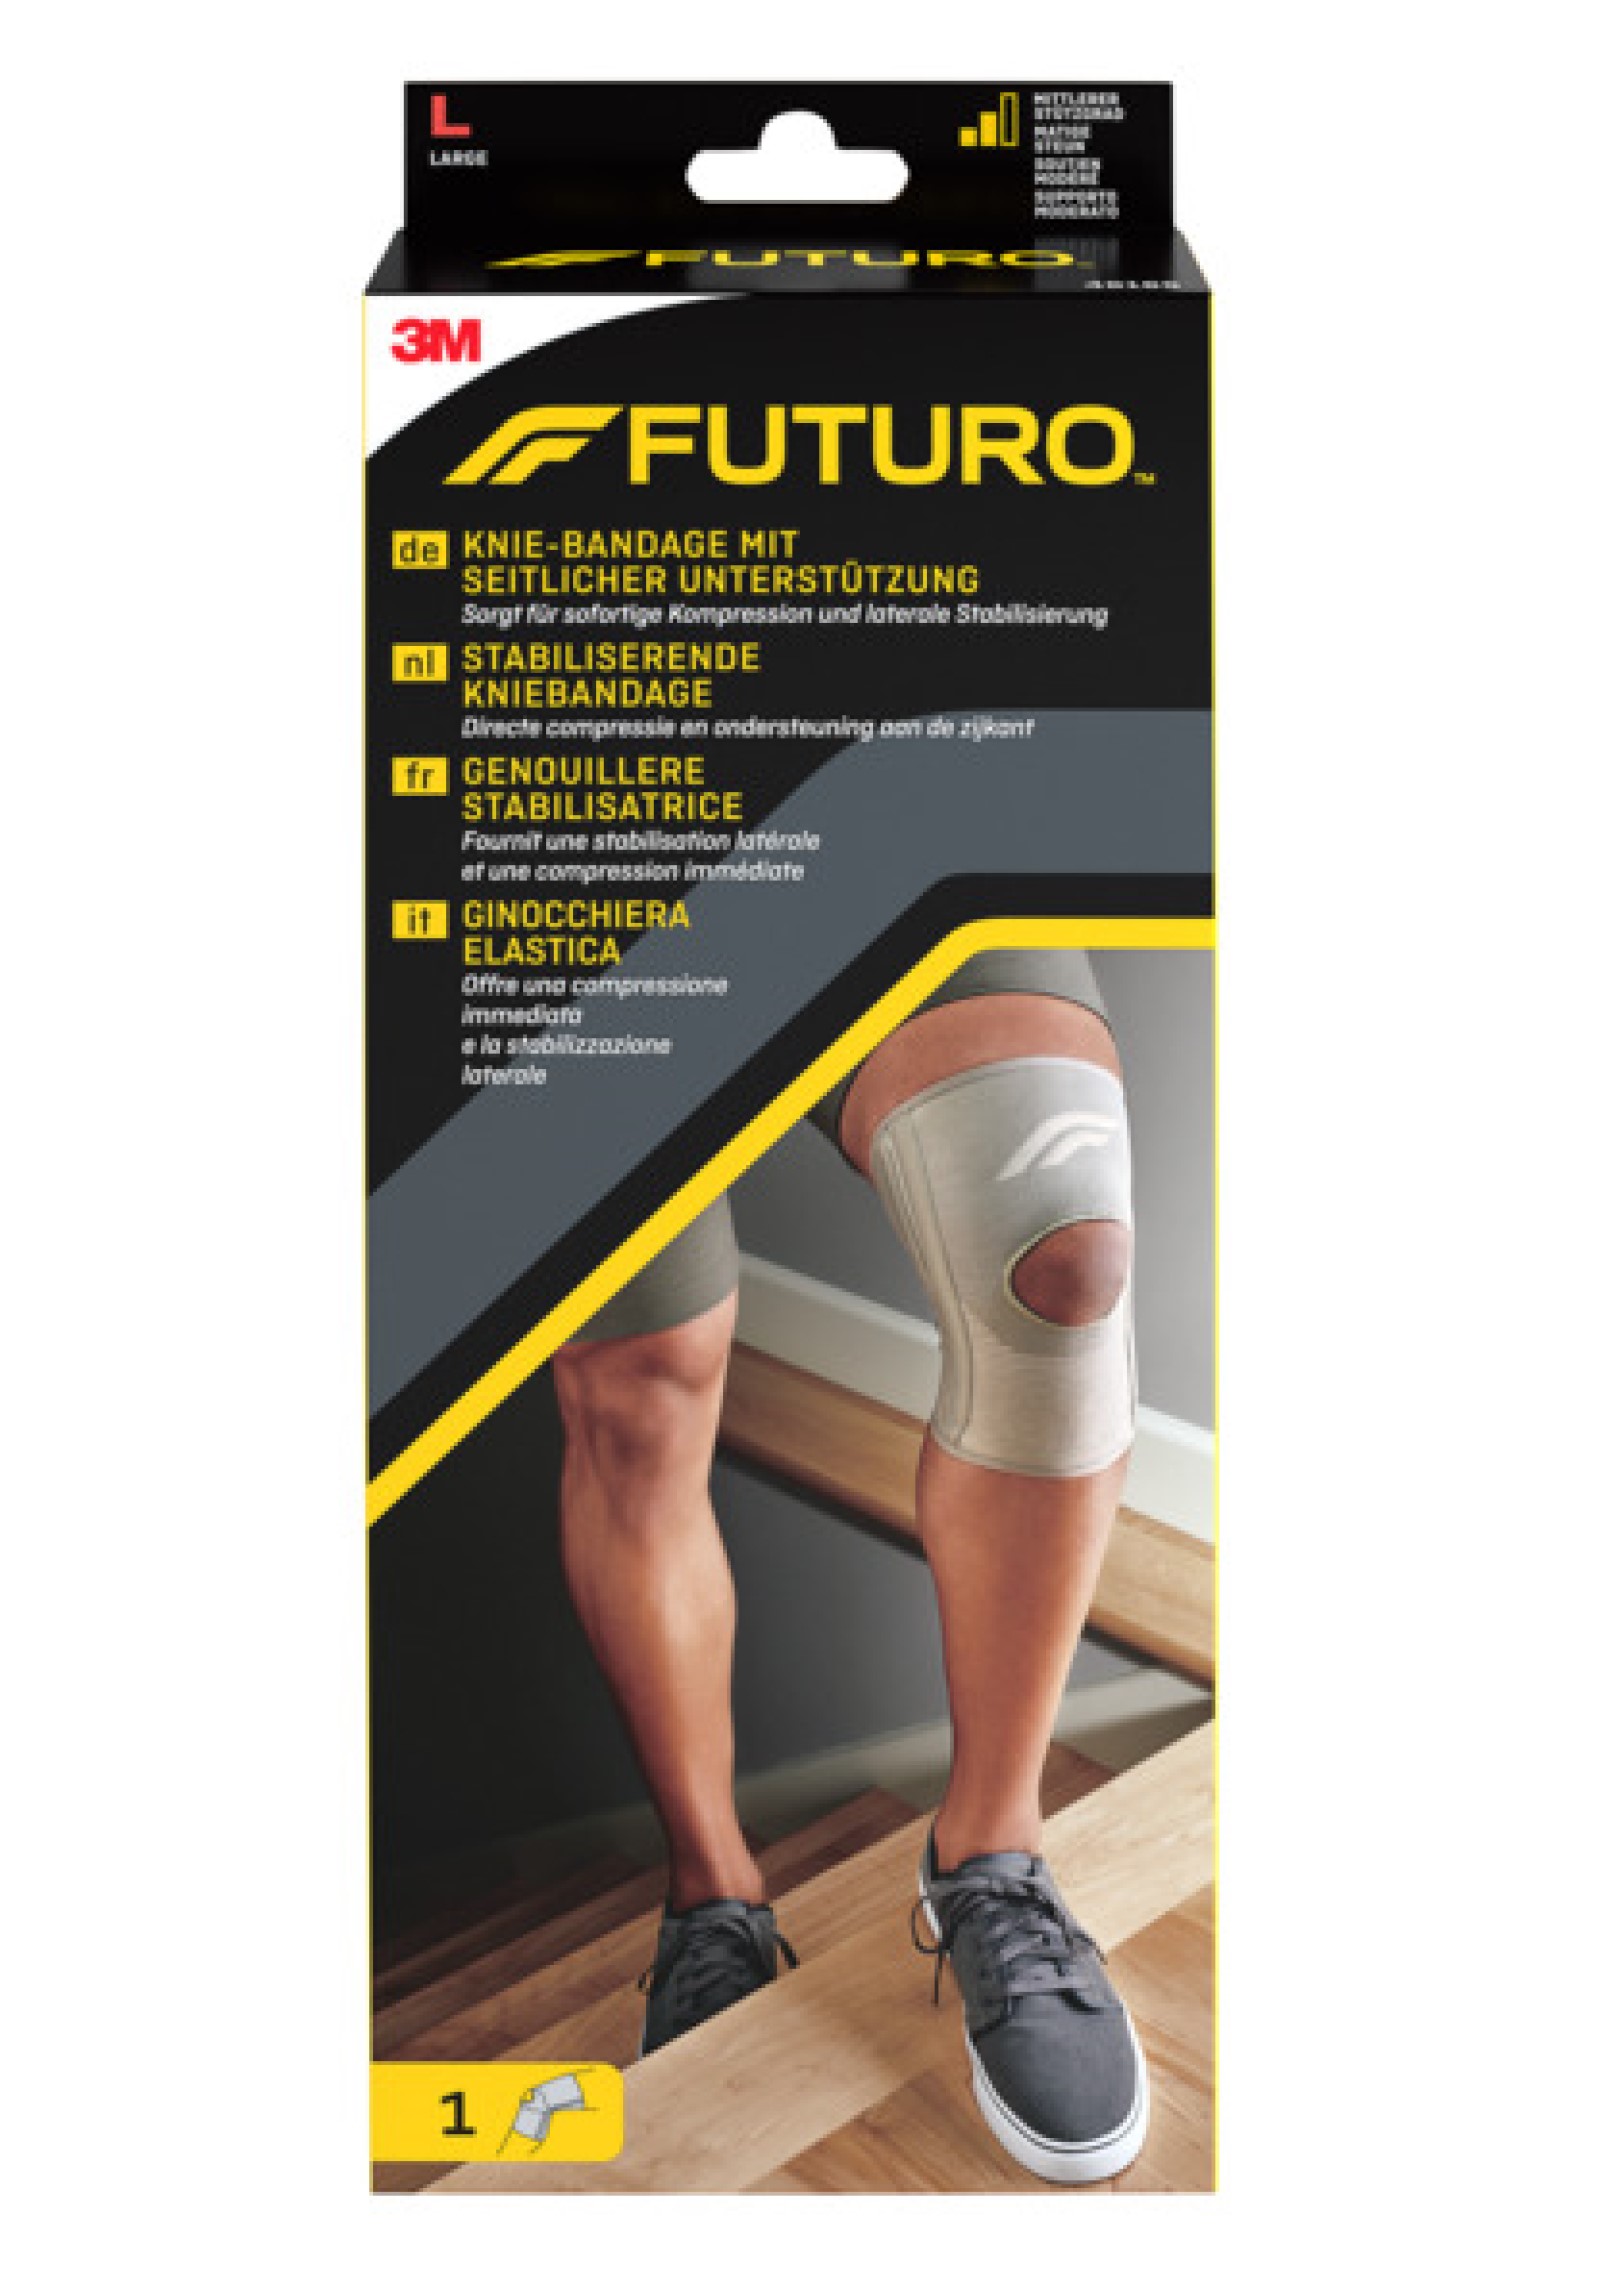 FUTURO™ Knie-Bandage mit seitlicher Unterstützung 46165, L (43.2 - 49.5 cm)